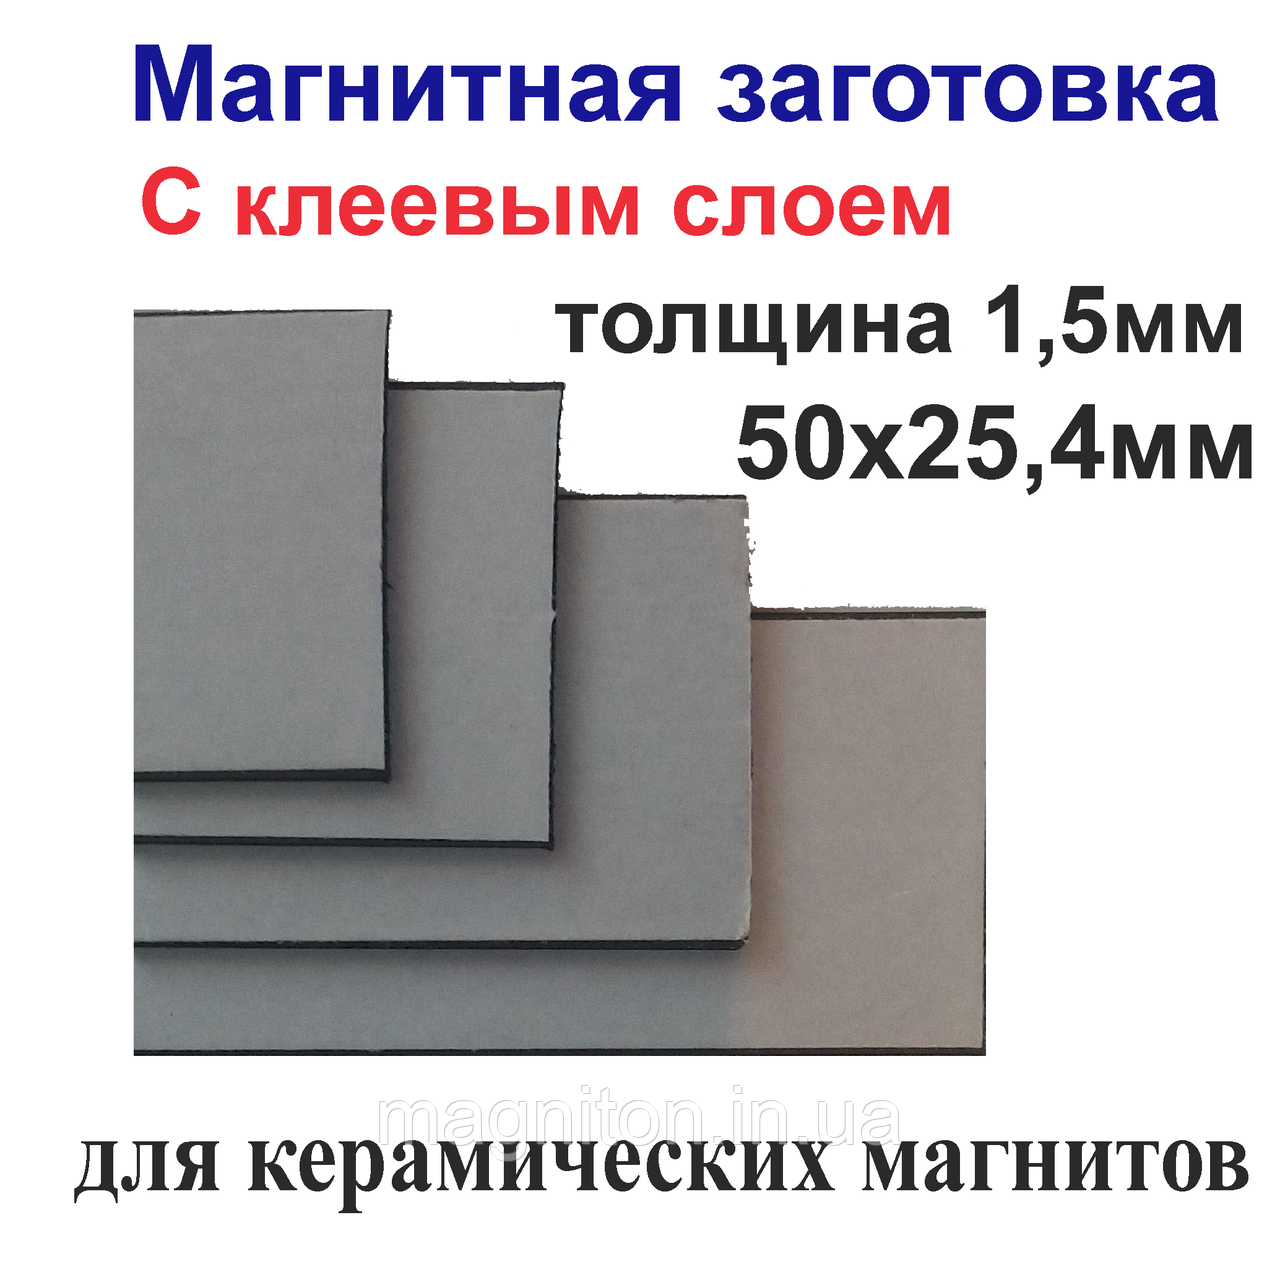 Магнитная заготовка 50х25,4мм с клеевым слоем для керамических магнитов